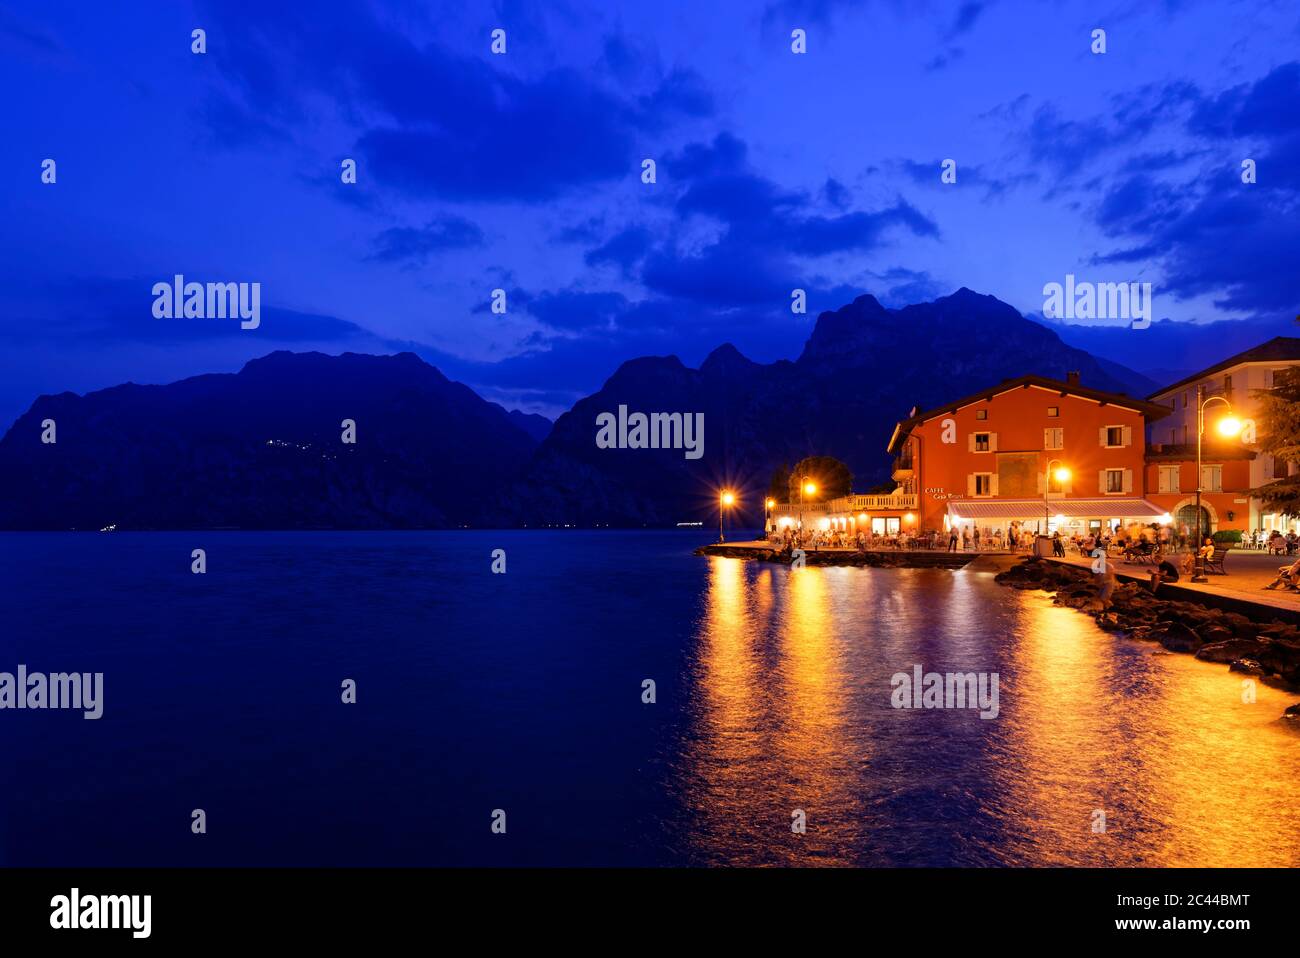 Italia, Trentino, Torbole, Lago di Garda, passeggiata e città illuminate al tramonto Foto Stock